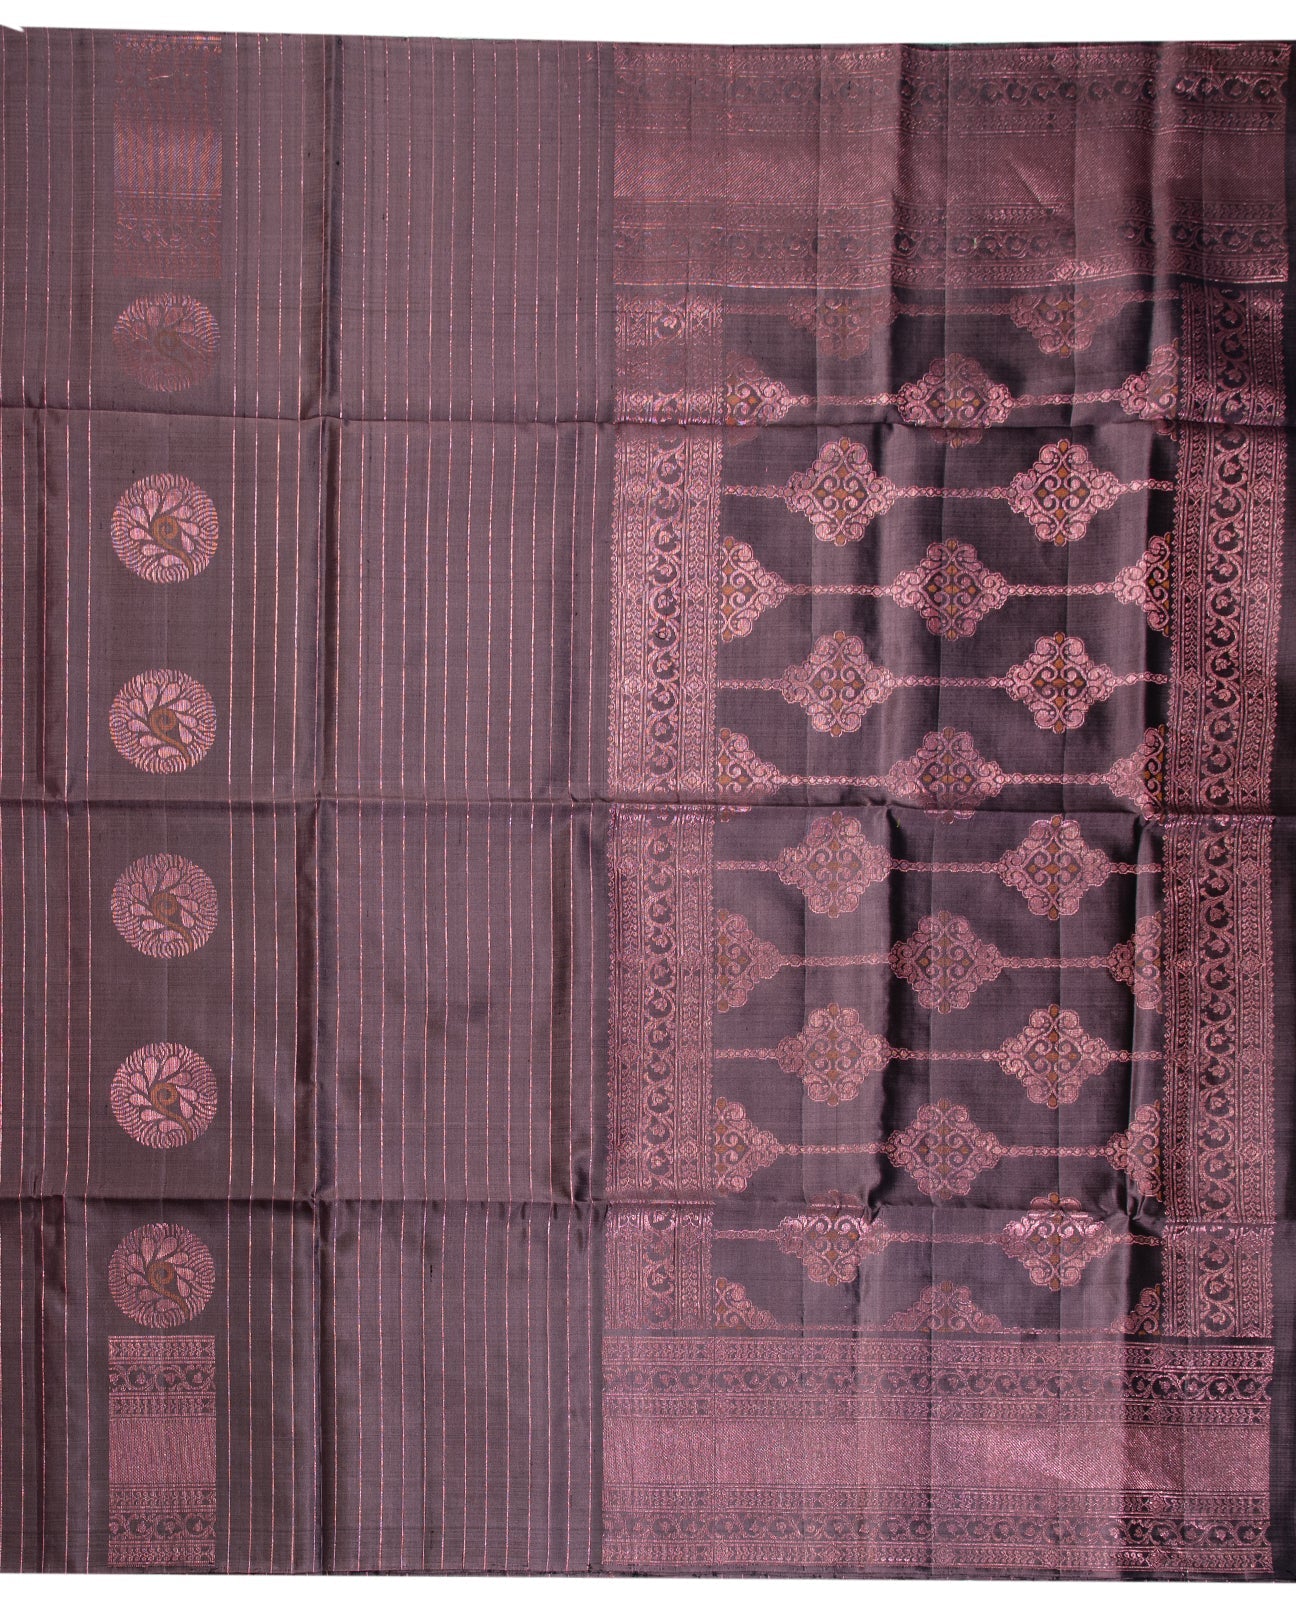 Vampire Grey Kancheepuram Saree - swayamvara silks